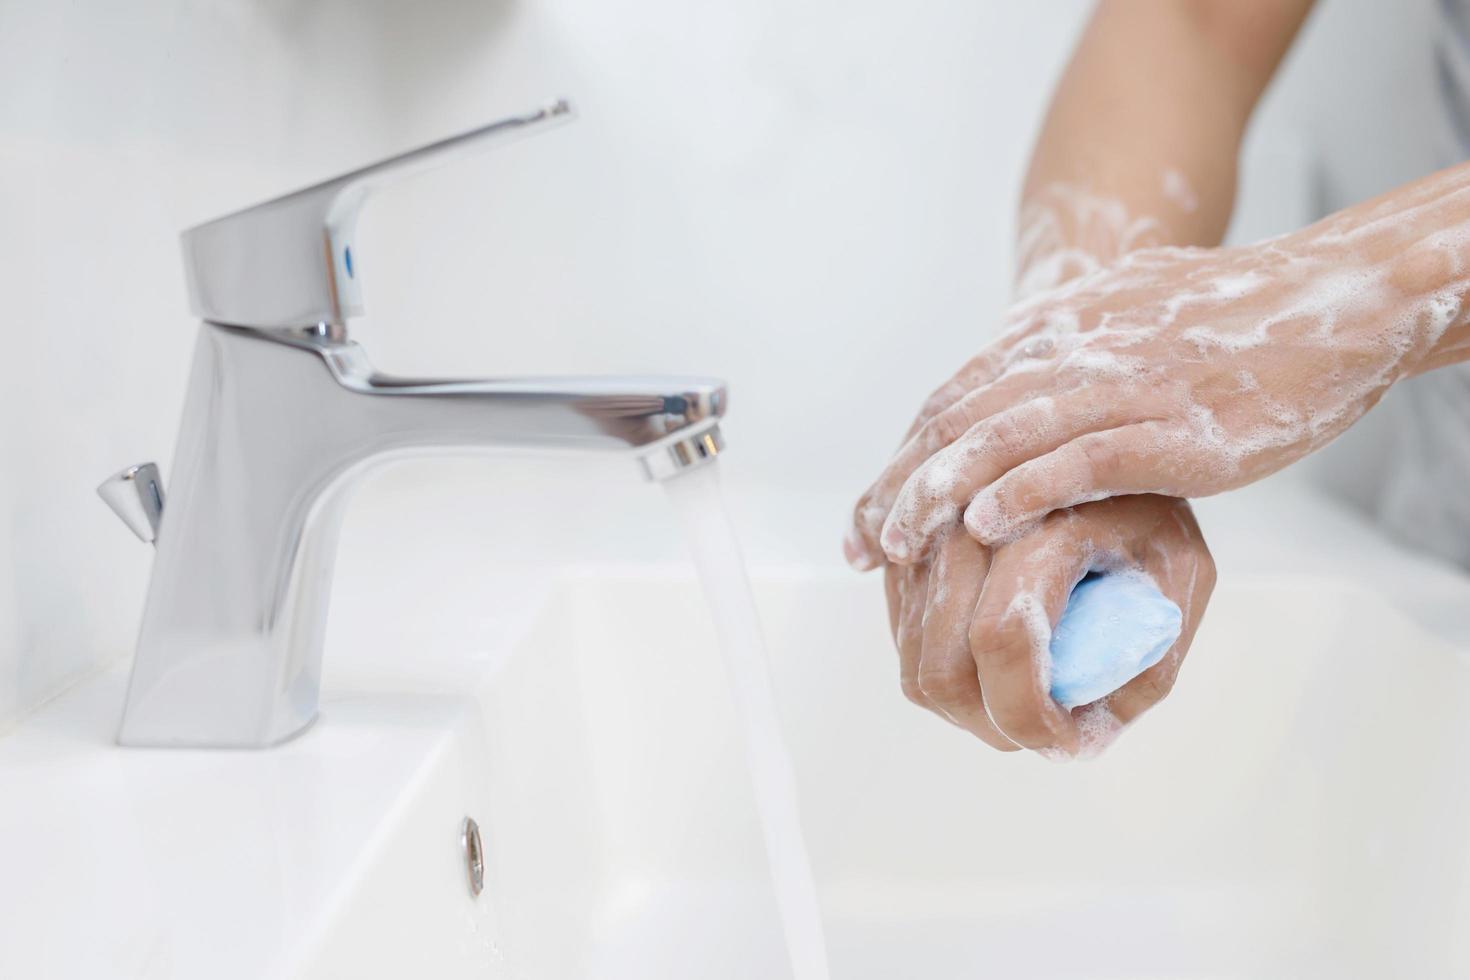 Hygiene. Hände reinigen. Händewaschen mit Seife unter dem Wasserhahn mit Wasser zahlen Schmutz. foto